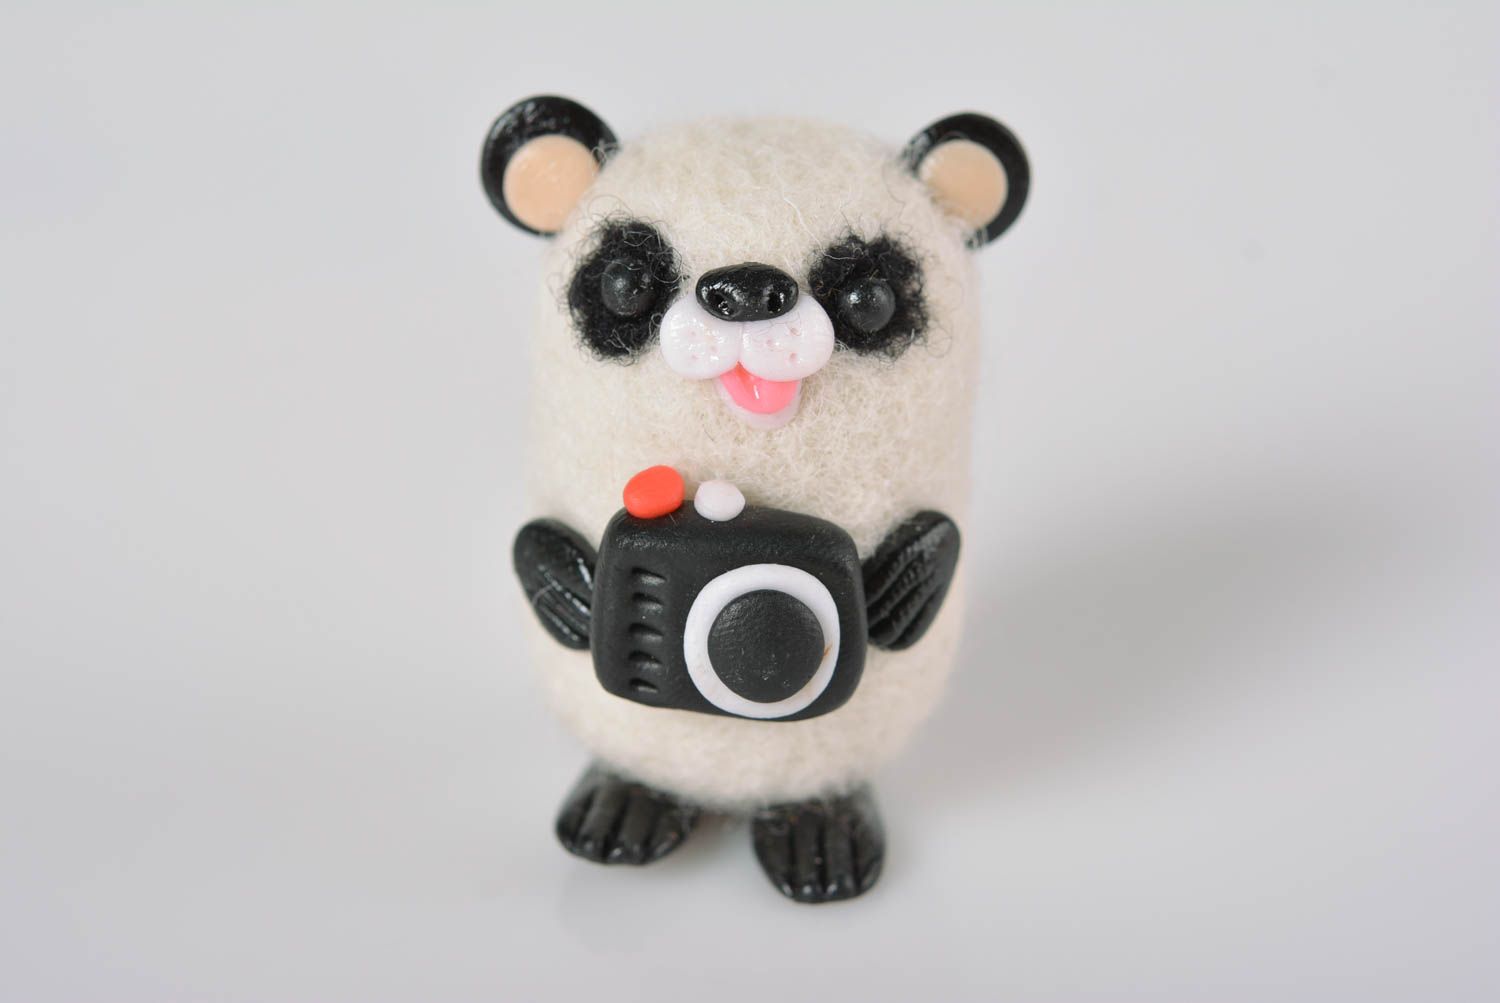 Игрушка интерьерная необычная игрушка ручной работы мягкая игрушка панда  фото 1